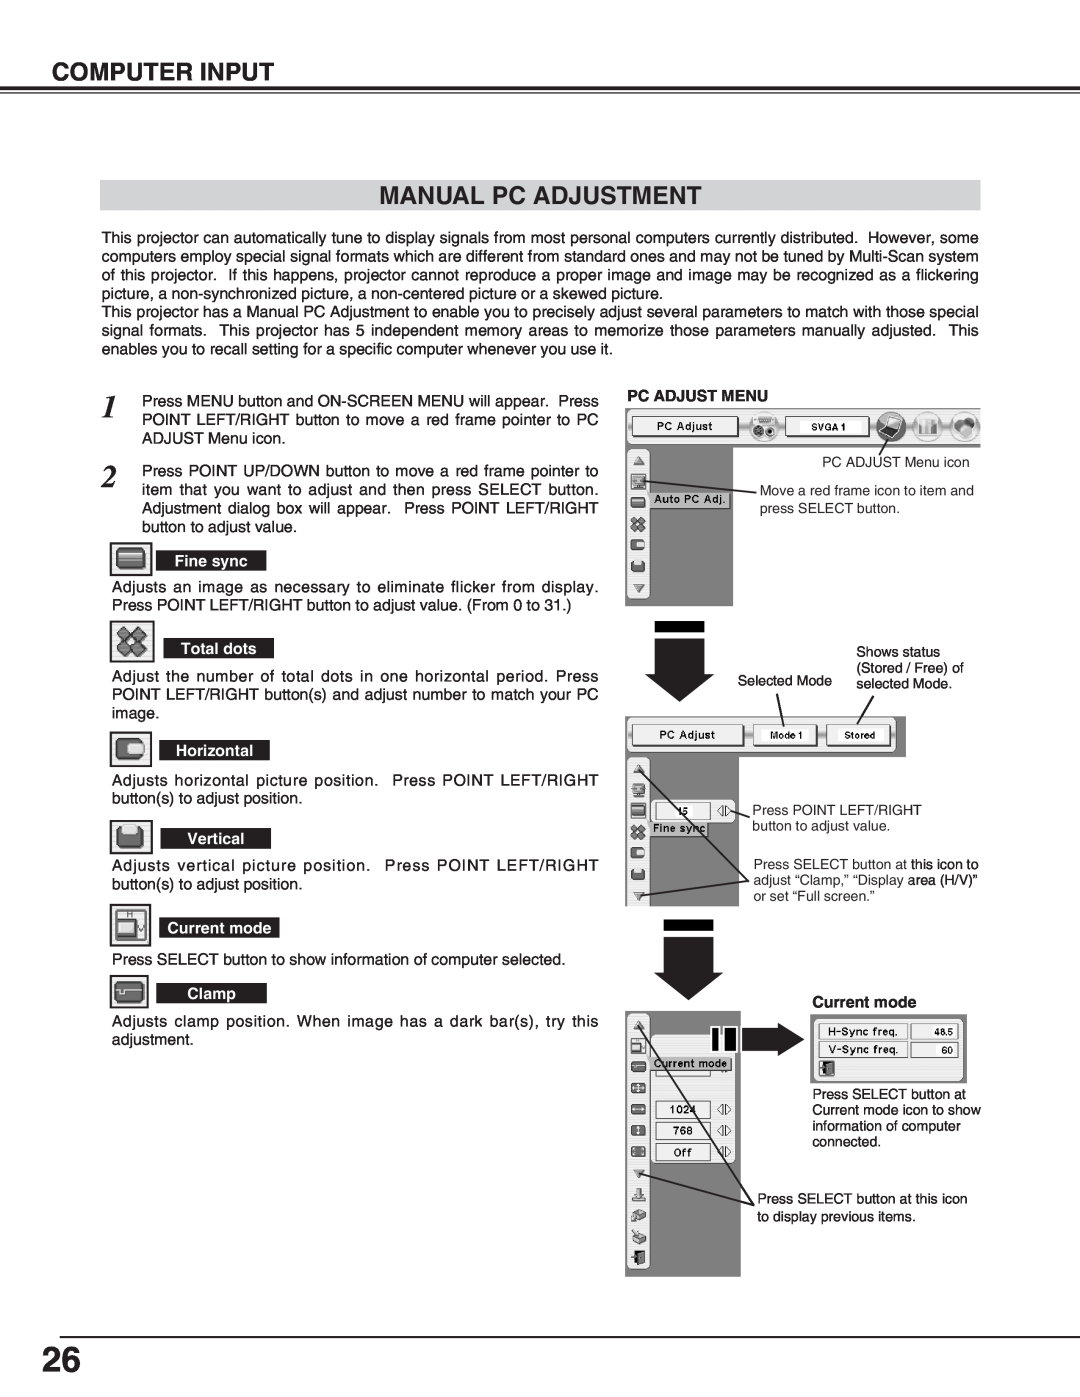 Eiki LC-X70 instruction manual Computer Input Manual Pc Adjustment, Pc Adjust Menu, Current mode 